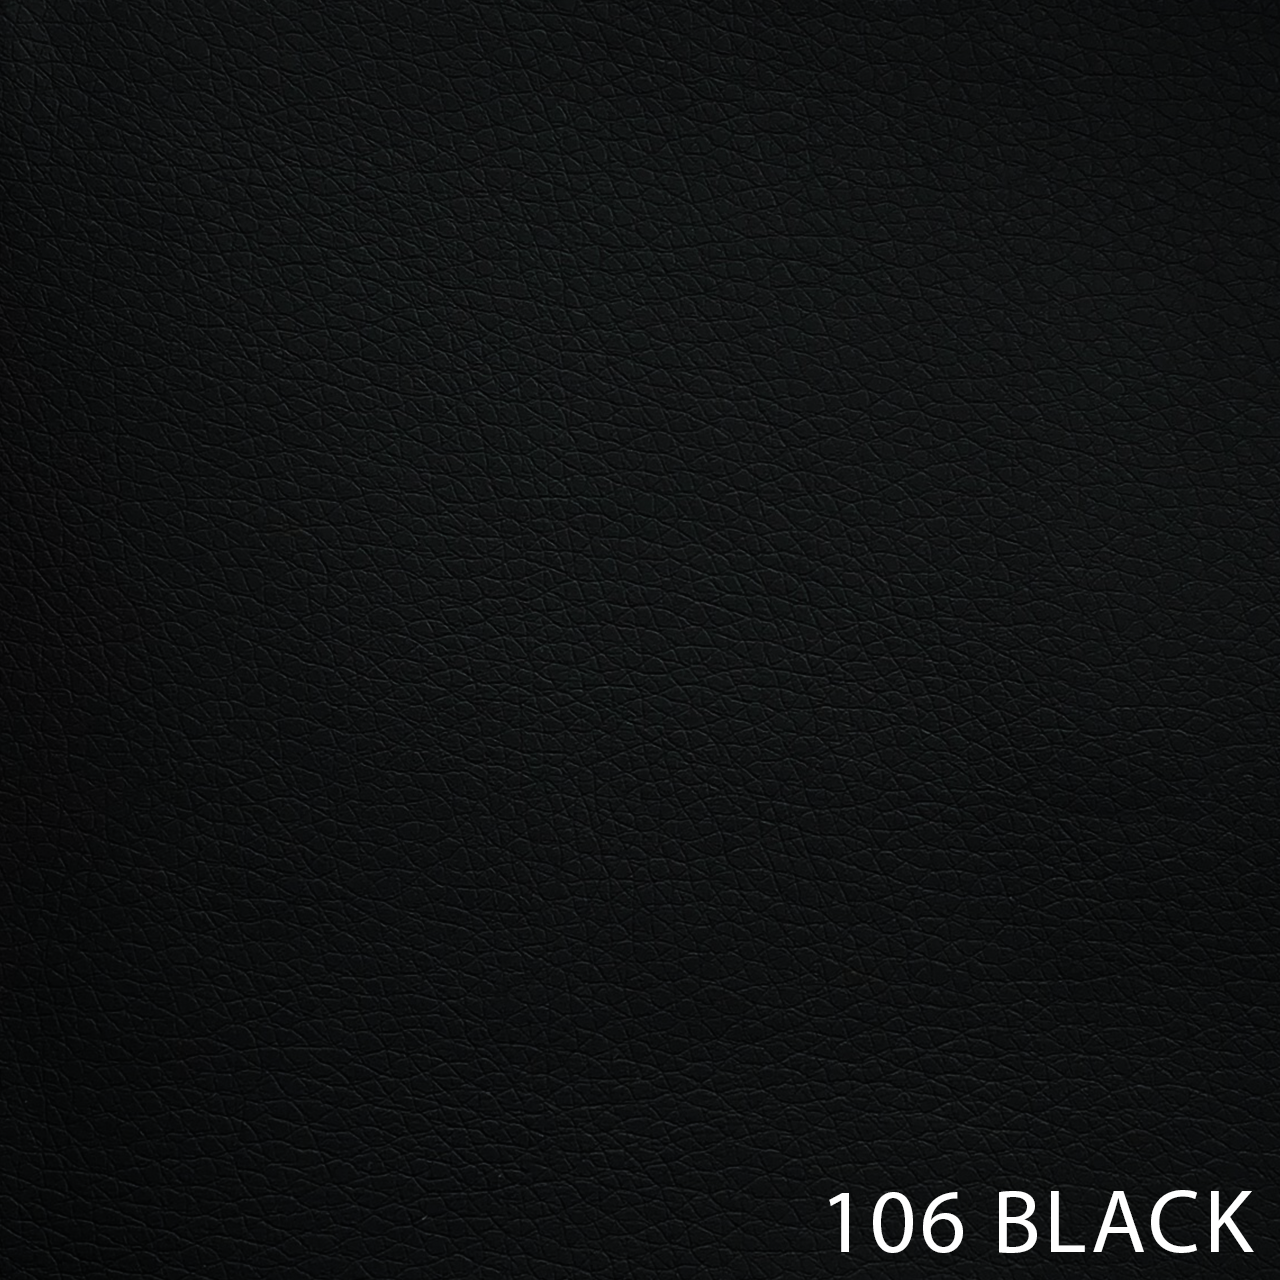 106 BLACK